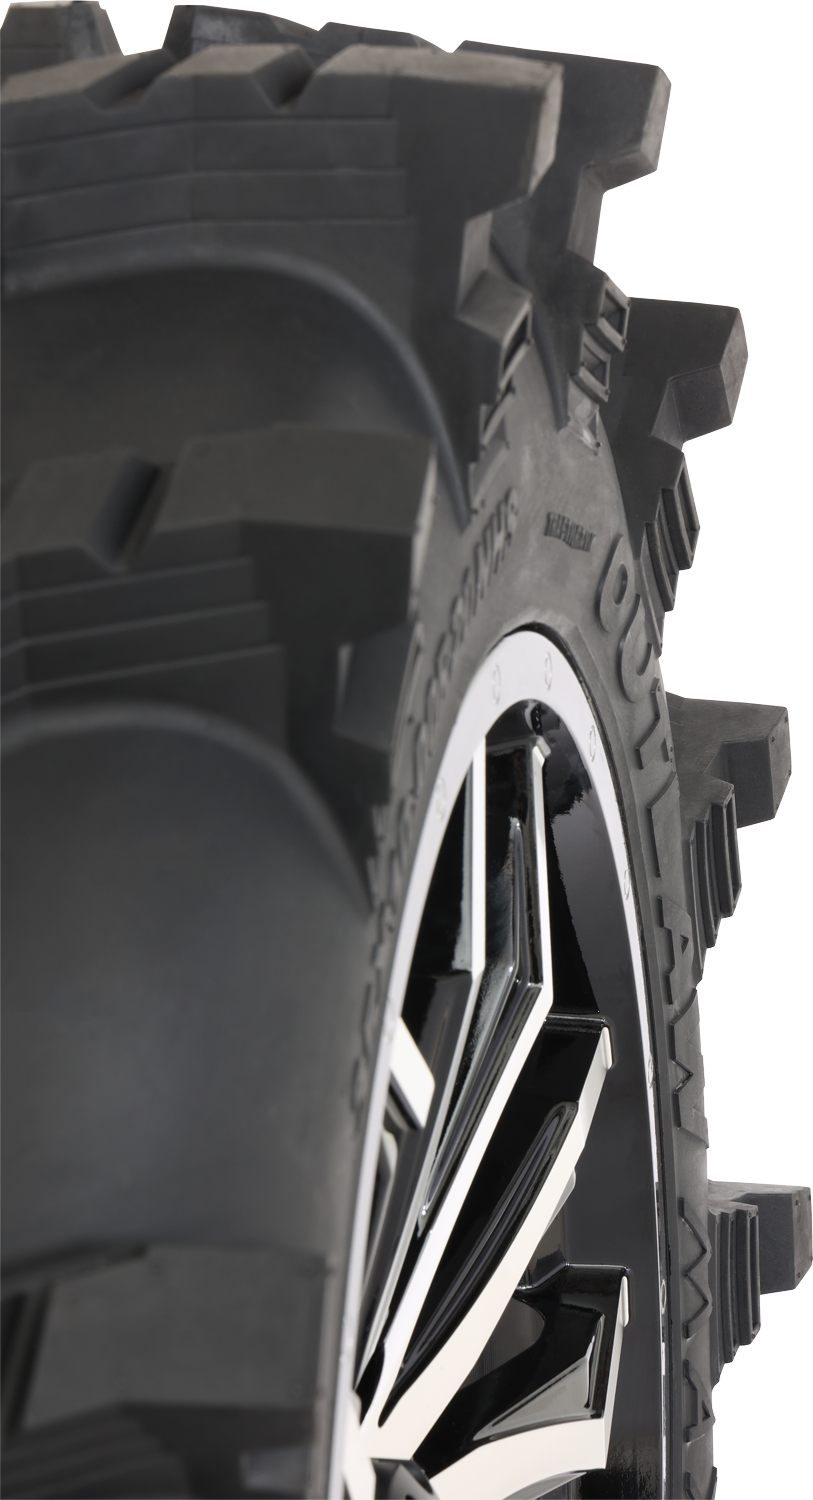 Neumático HIGH LIFTER - Outlaw Max - Delantero/Trasero - 30x10R14 - 8 capas 001-2327HL